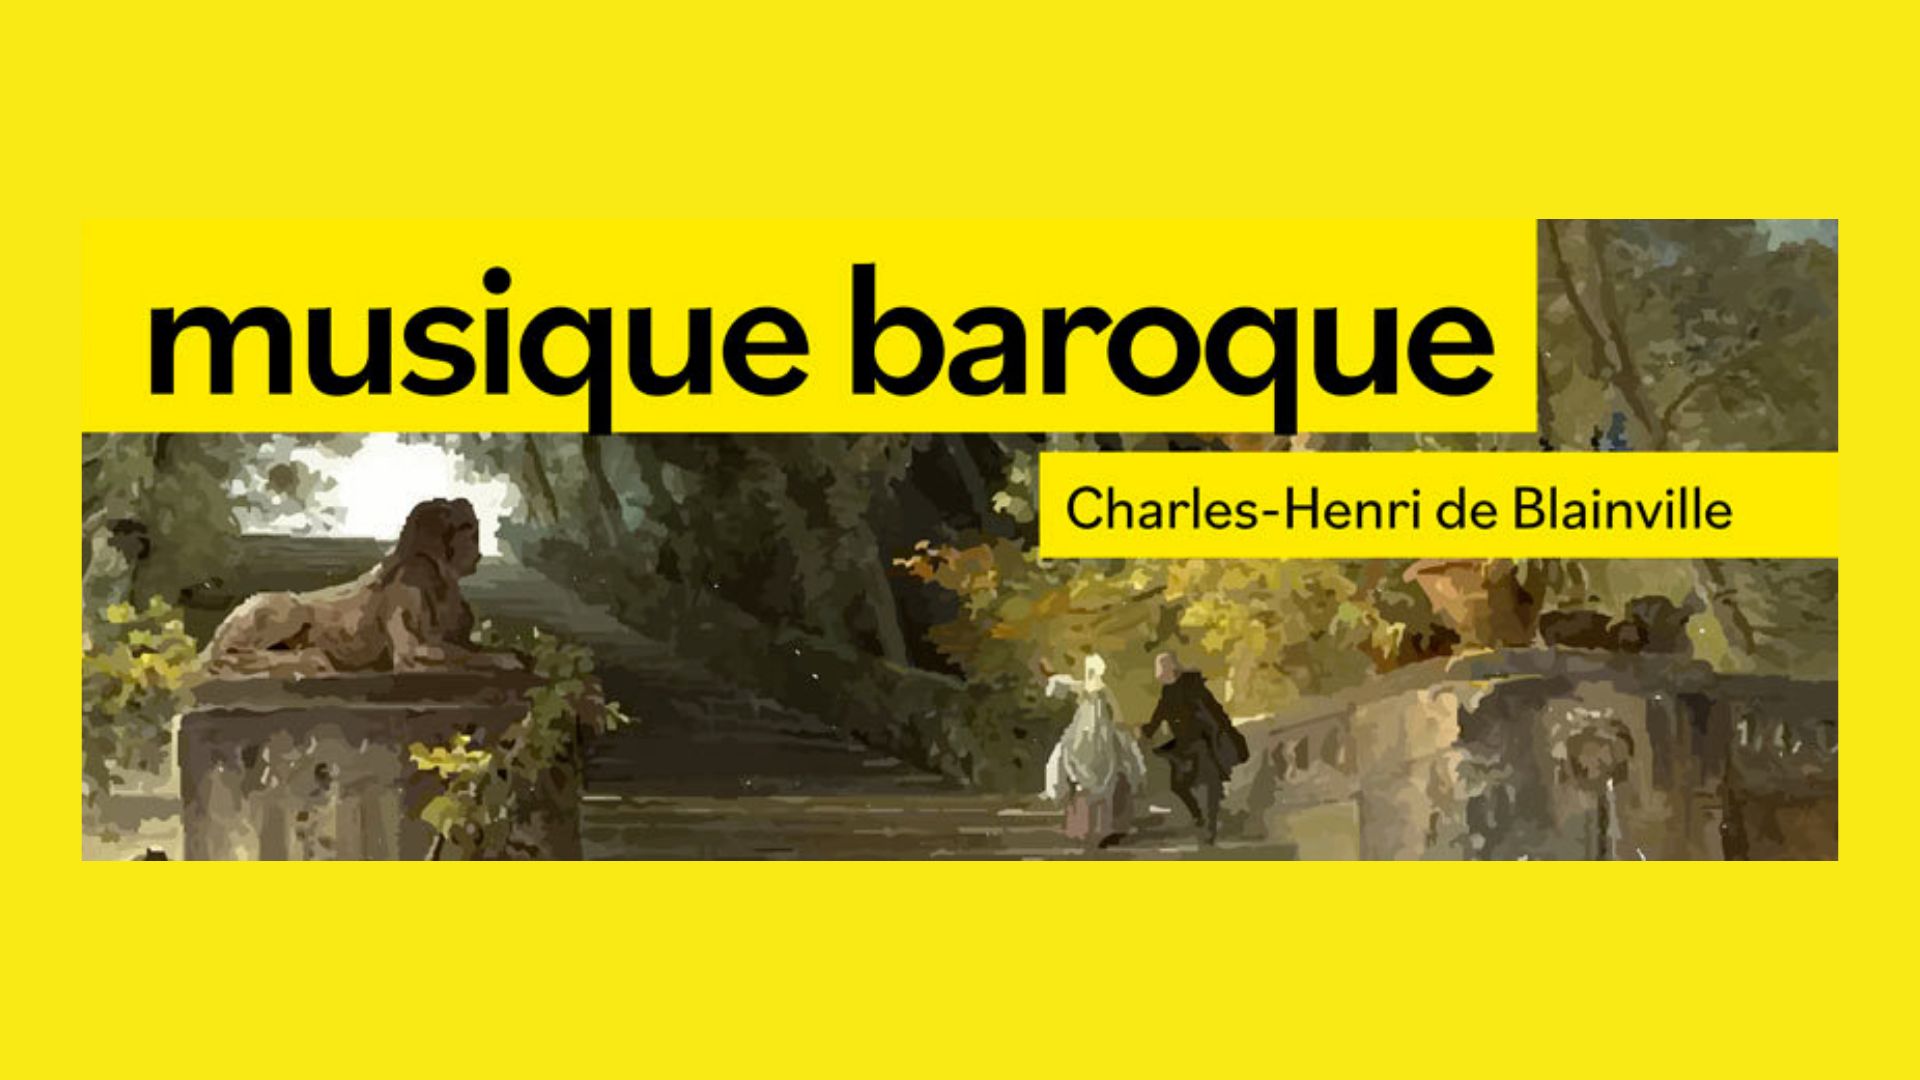 Musique baroque : concert d'une partition de Charles-Henri de Blainville